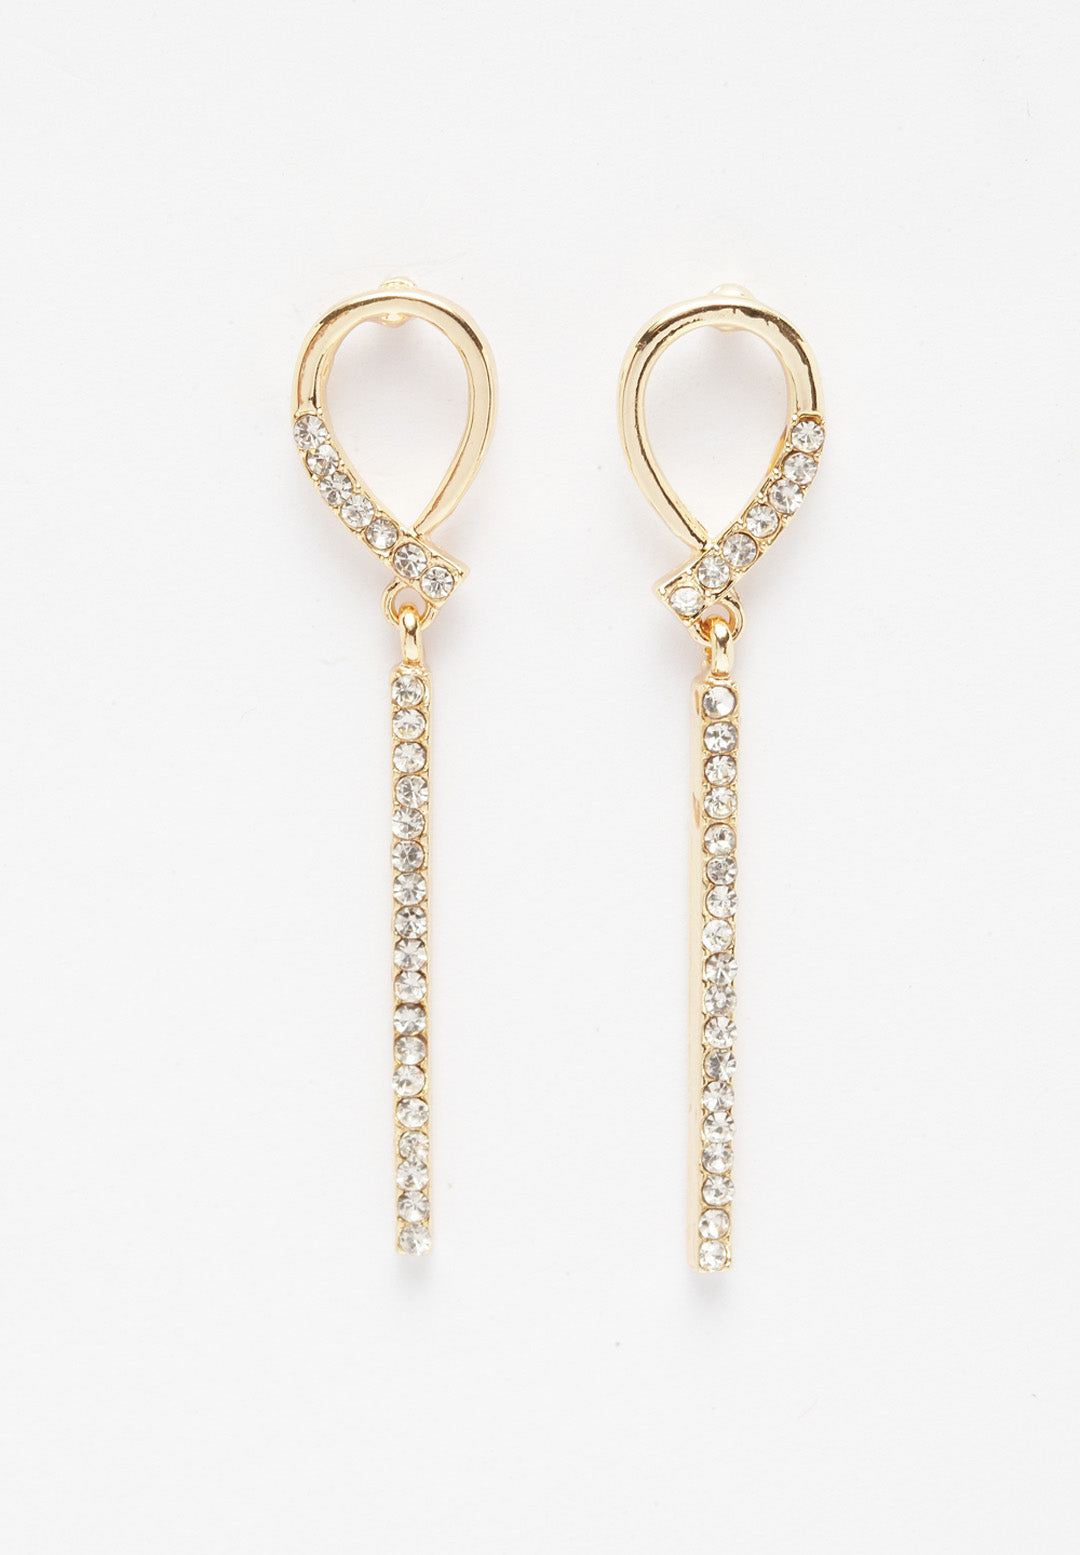 Boucles d'oreilles pendantes luxueuses en plaqué or avec cristaux